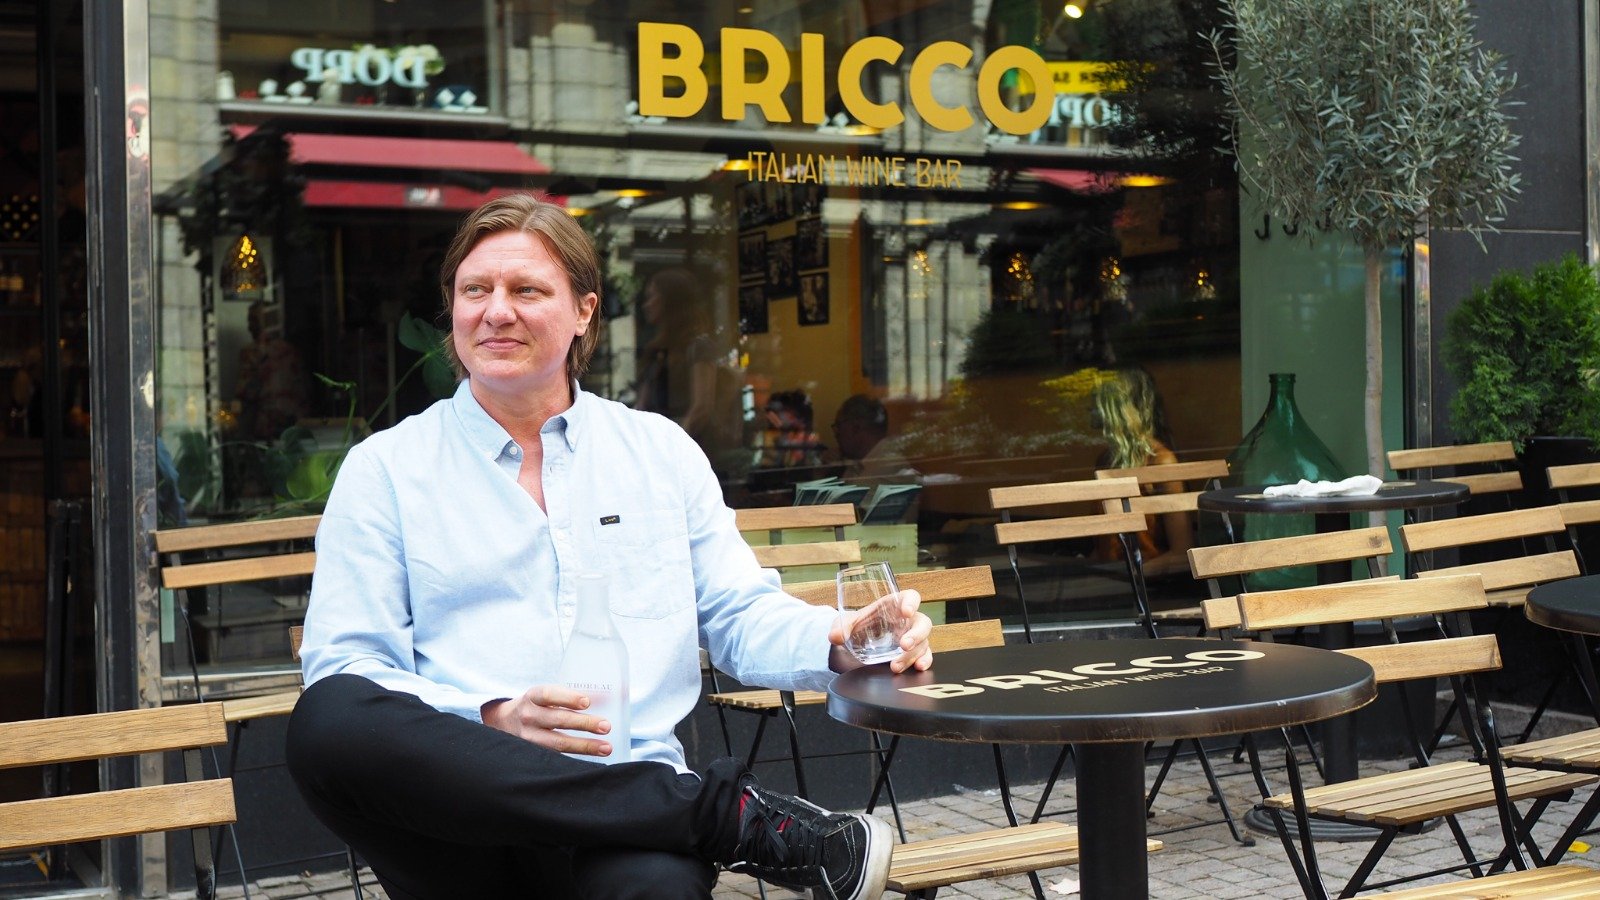 Bricco ponnahti hiljaisesta koronakeväästä kesän kuumimmaksi menopaikaksi